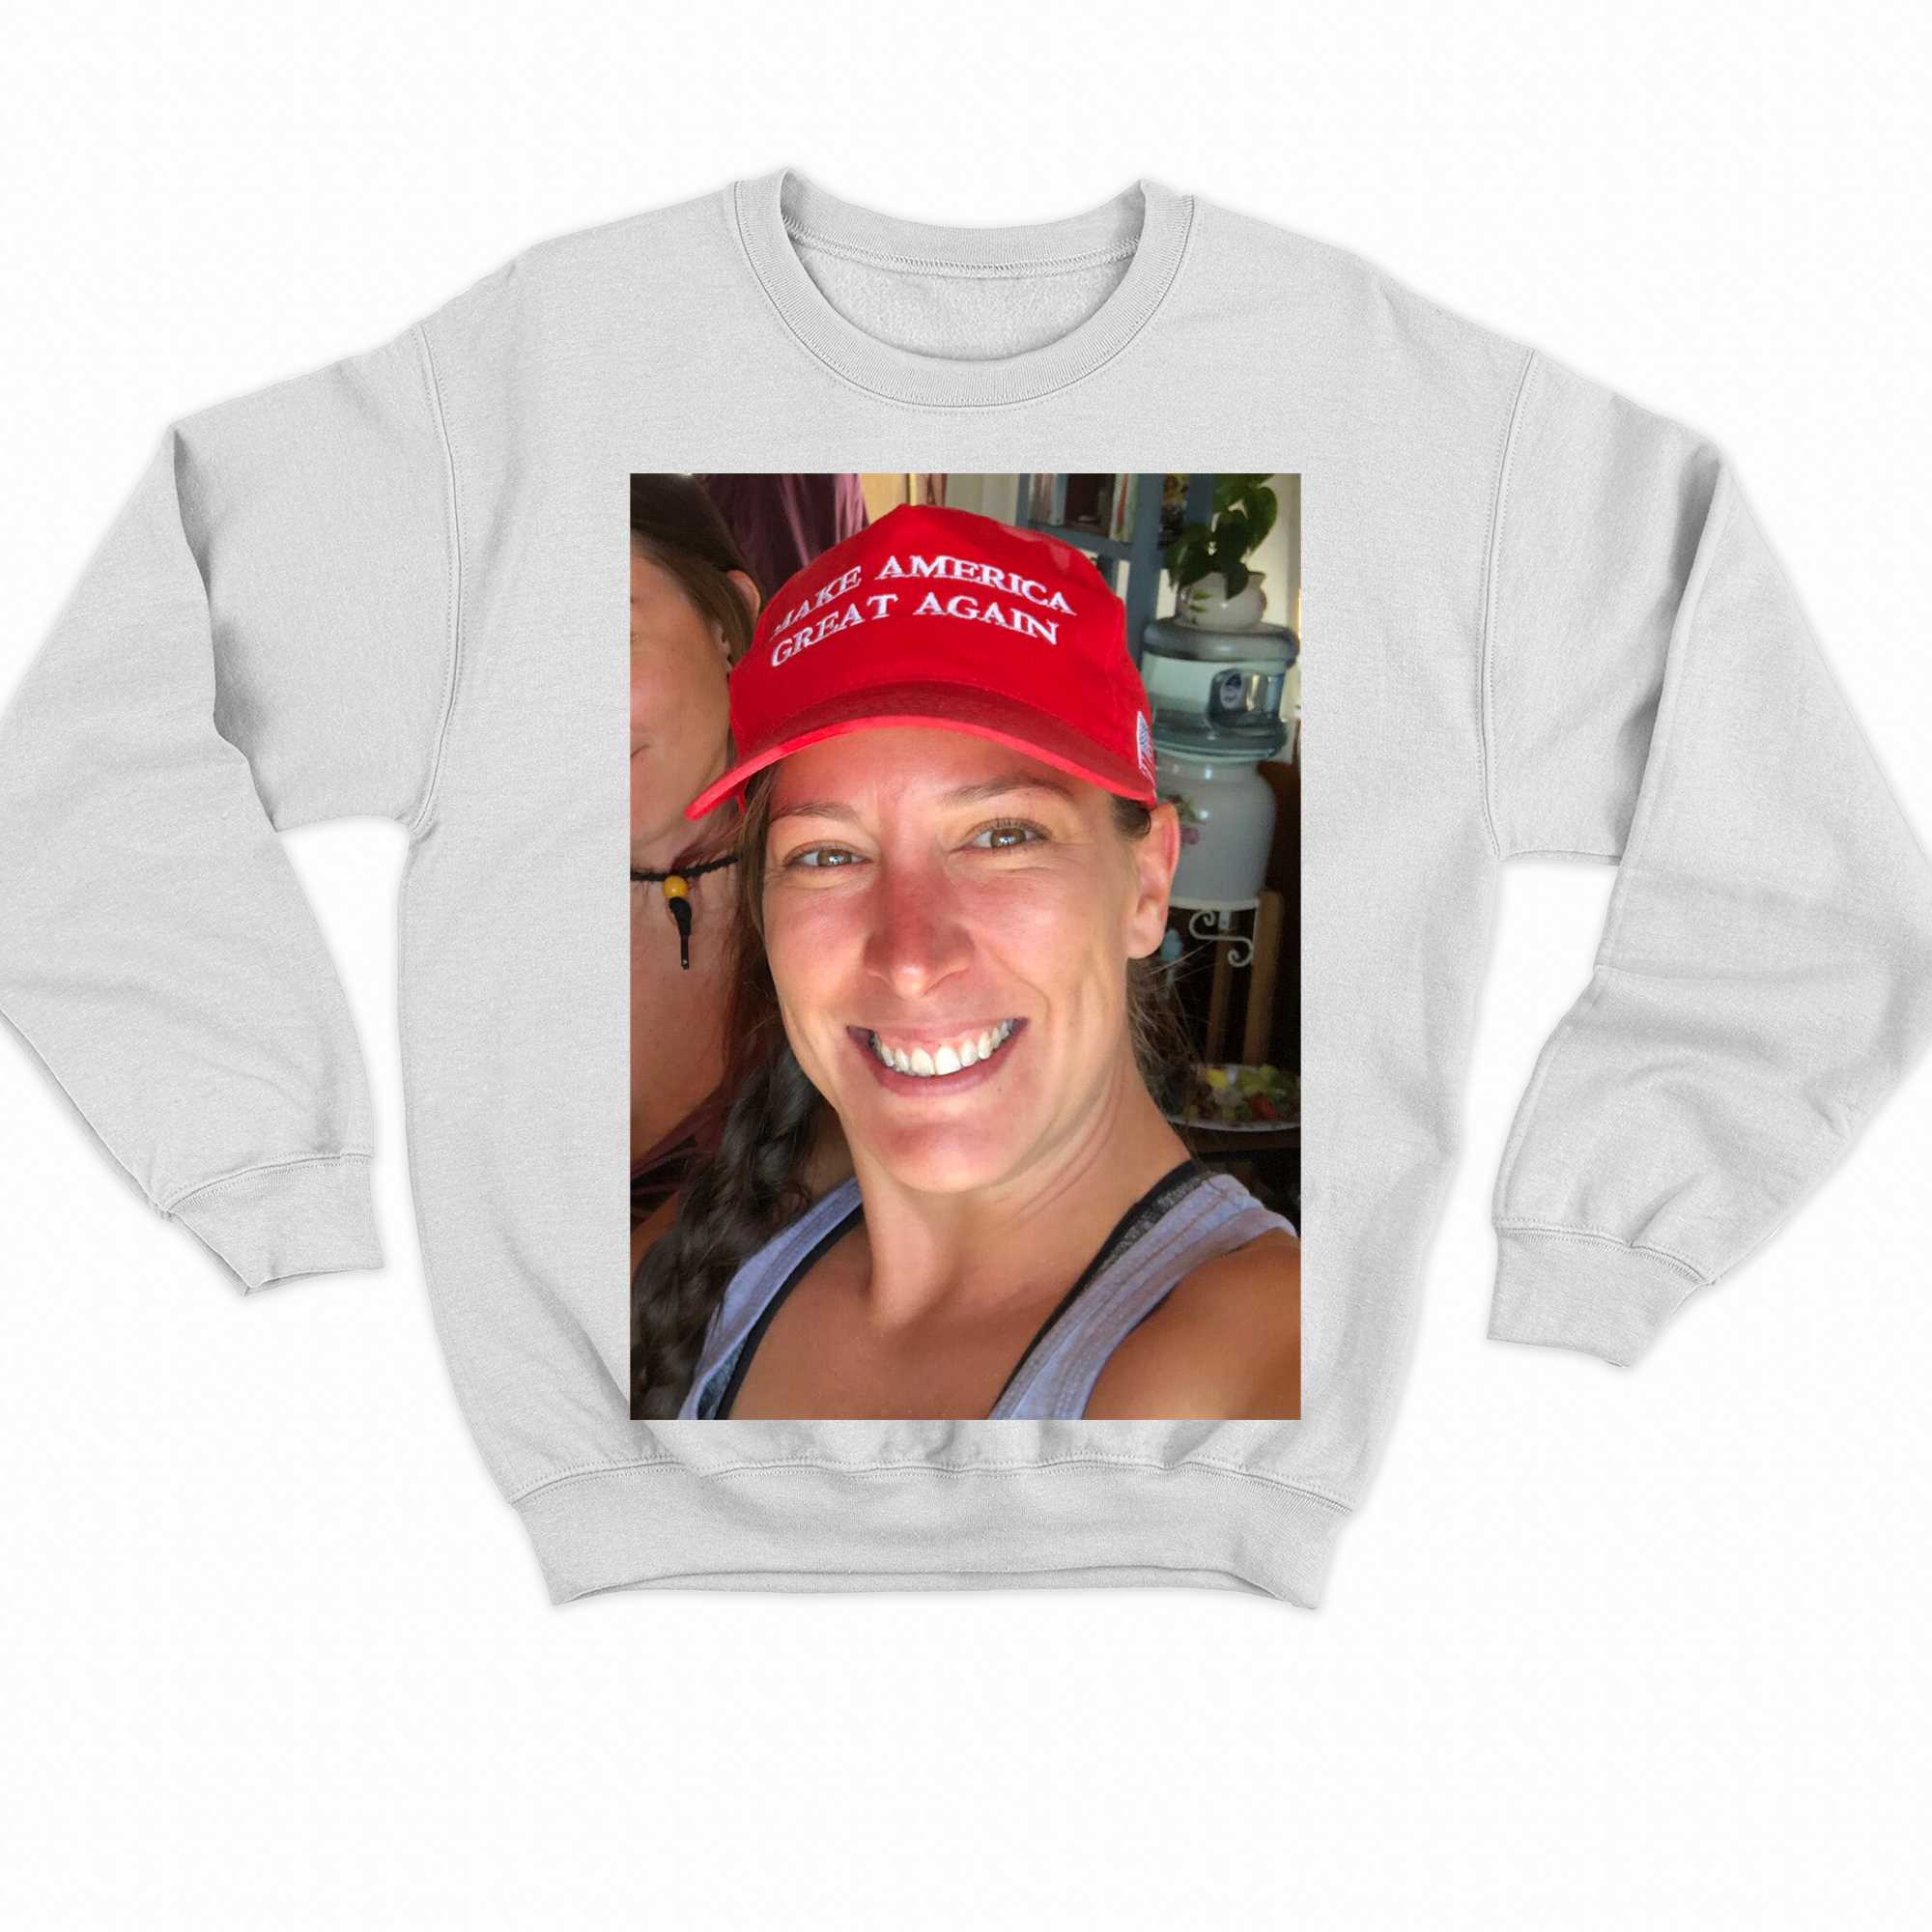 Ashli Babbitt Make America Great Again T-shirt 